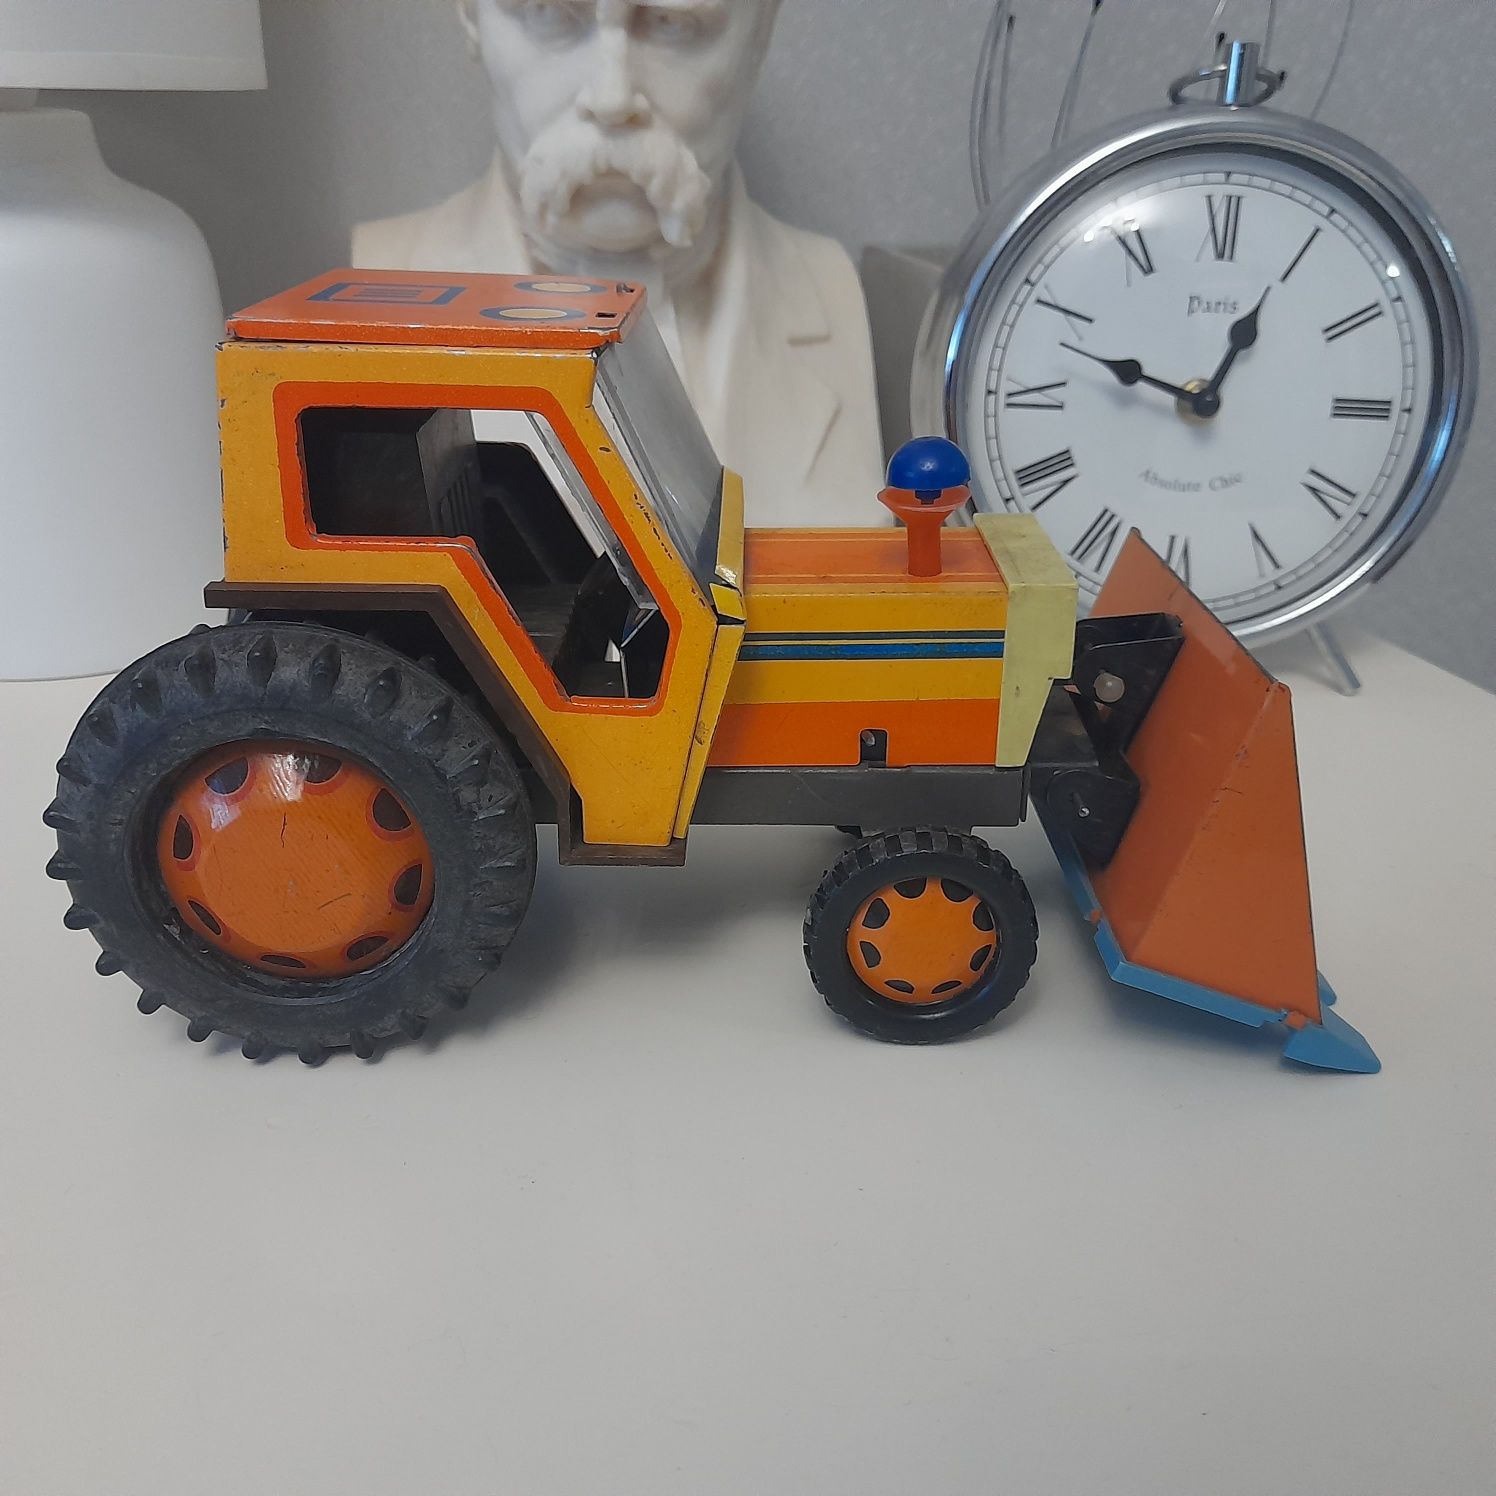 Київ завод Ватутіна,  трактор іграшка часів срср